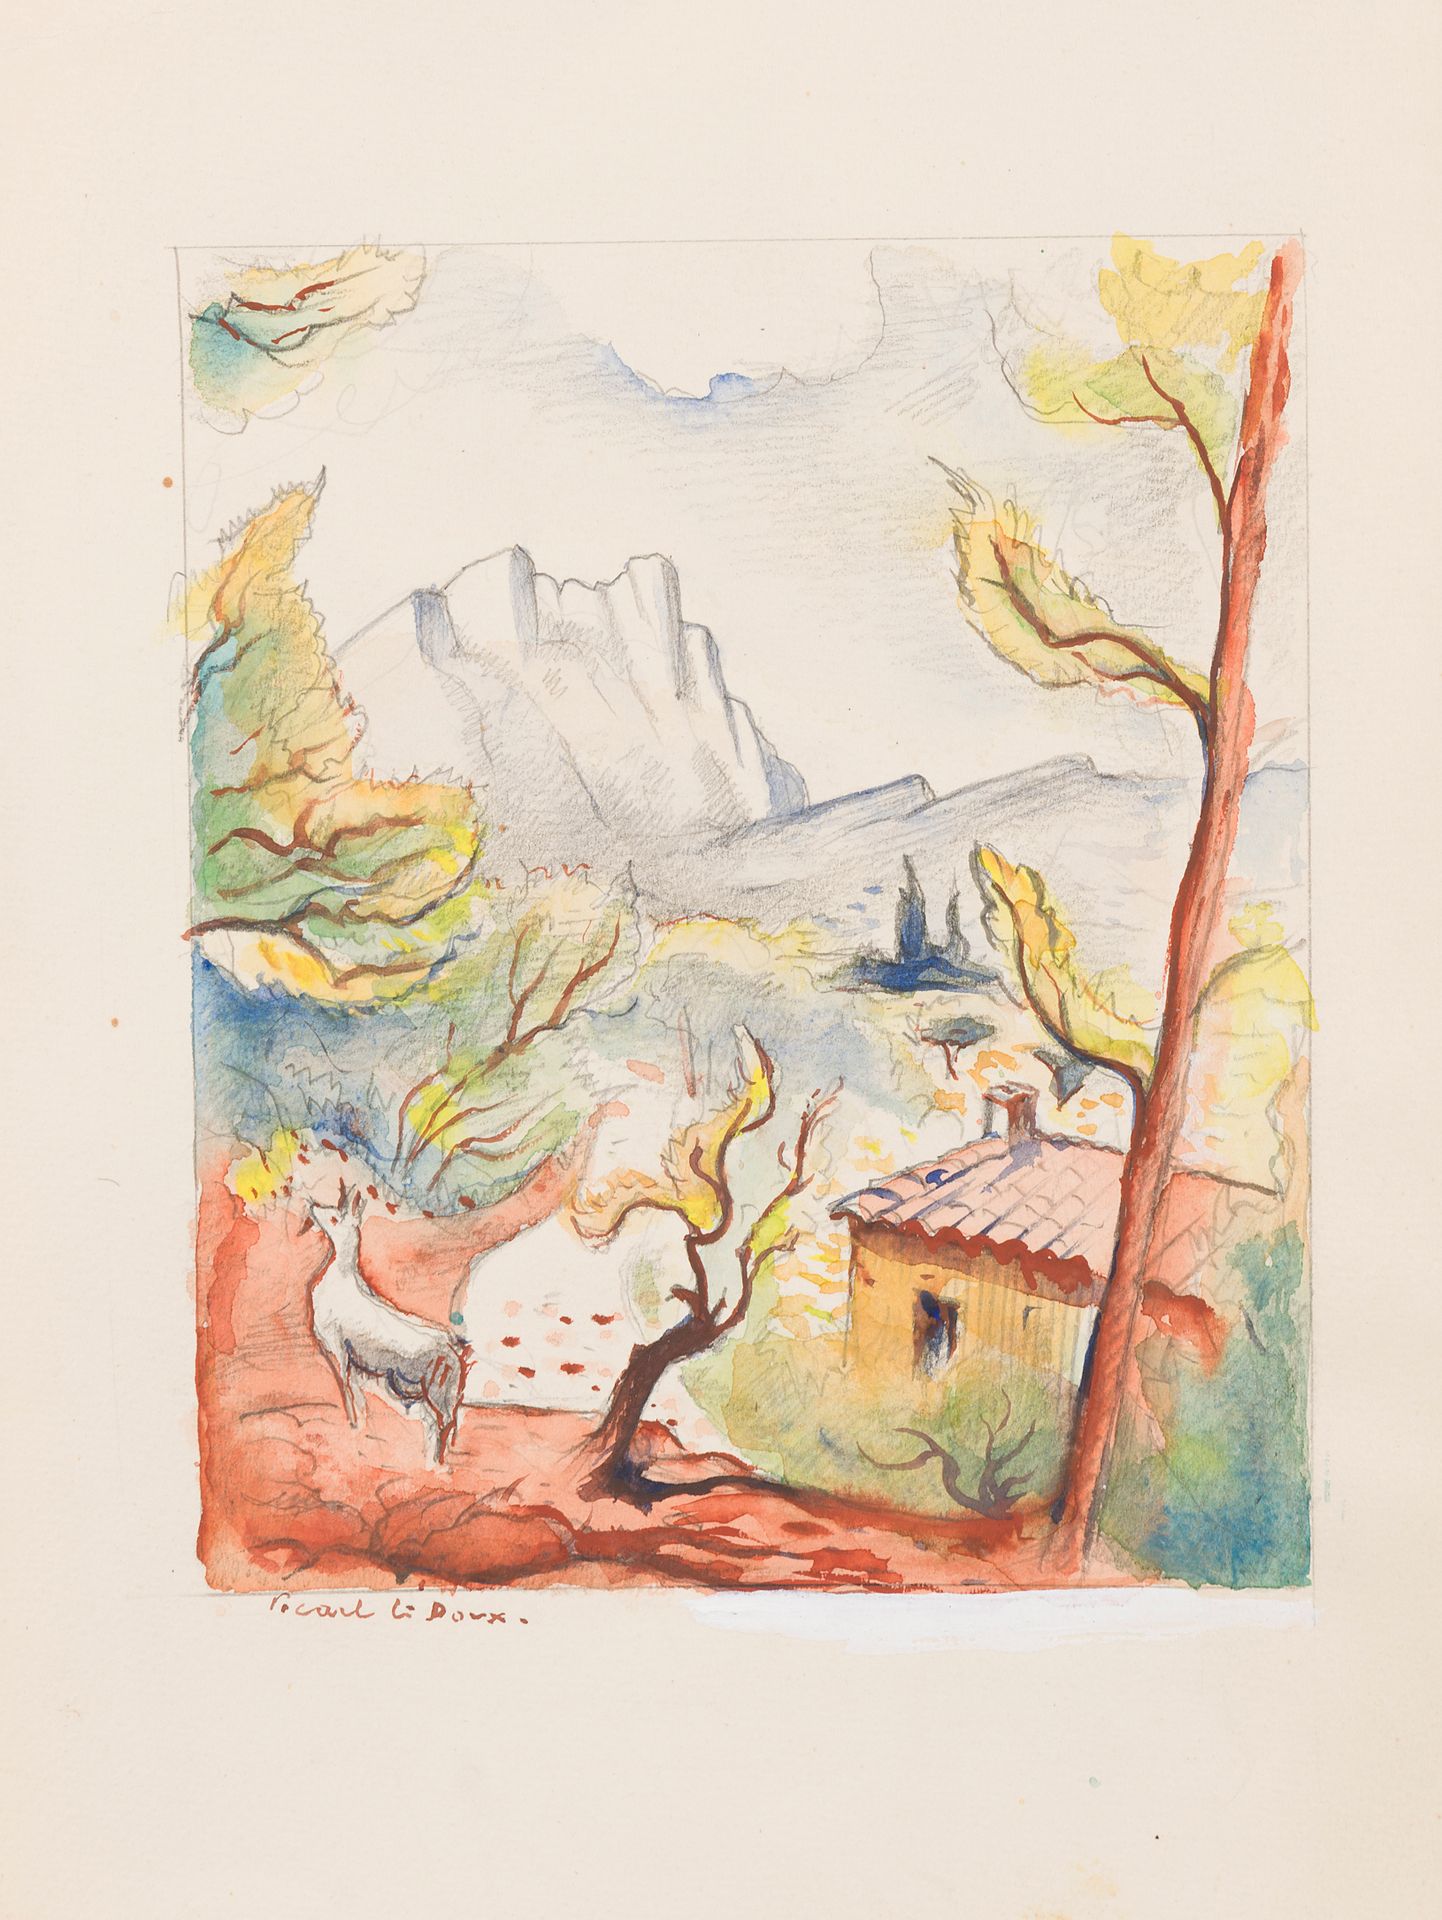 Null 查尔斯-皮卡特-勒杜 (1881-1959)
风景画，广告支持的骗局，等等。
五幅水墨画套装
一幅有图案，一幅有签名
工作室的印章
从27x19厘米到&hellip;